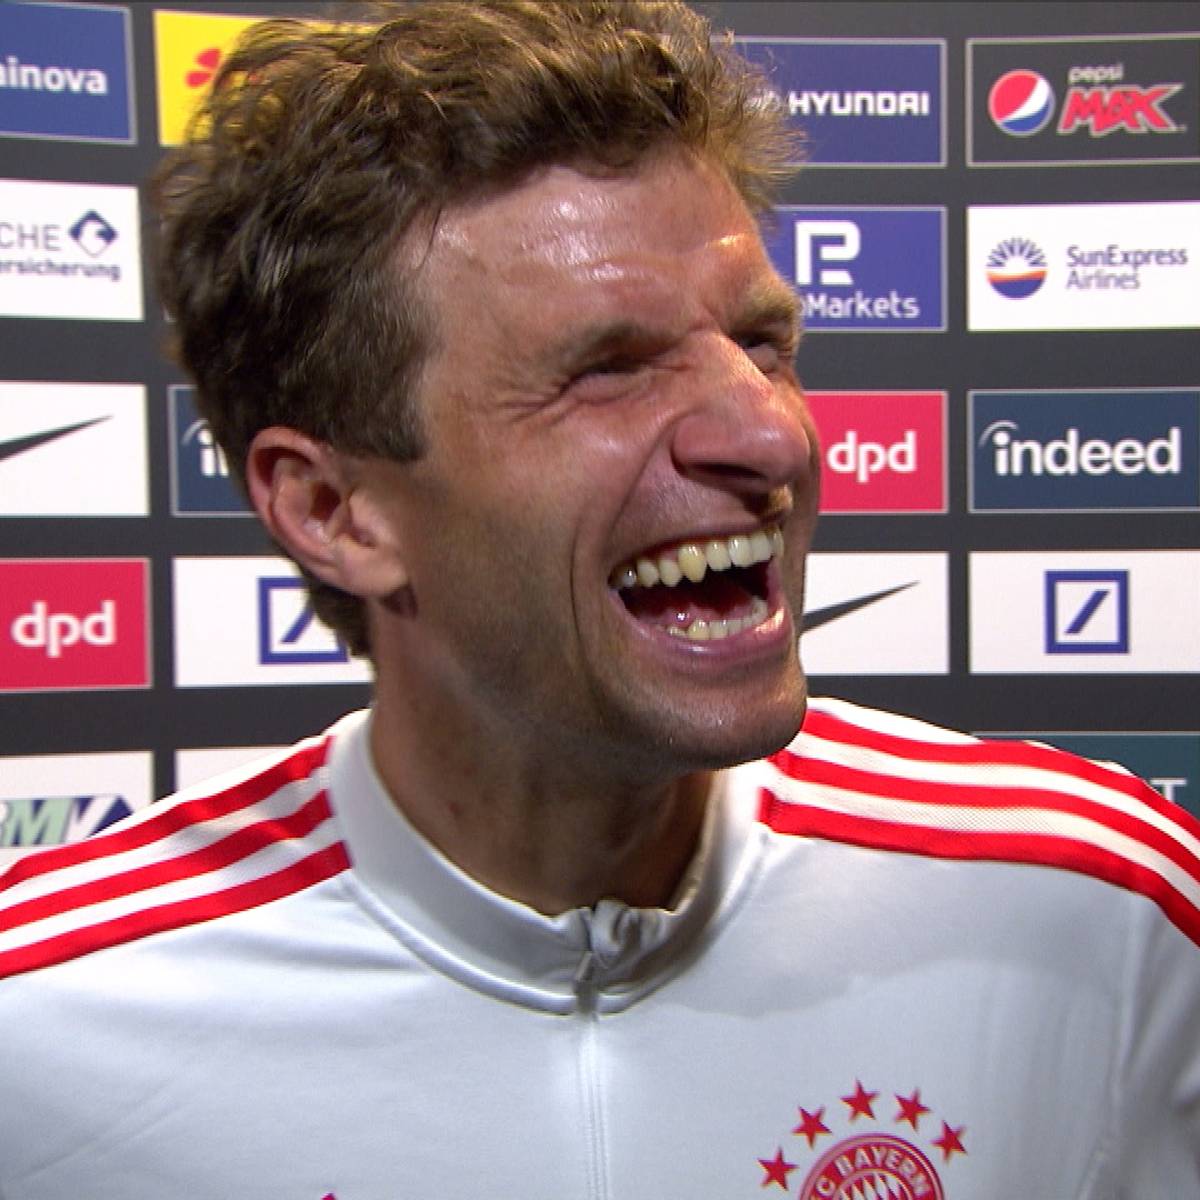 Müller macht der Liga Angst: "Das ist kein Zufall"!